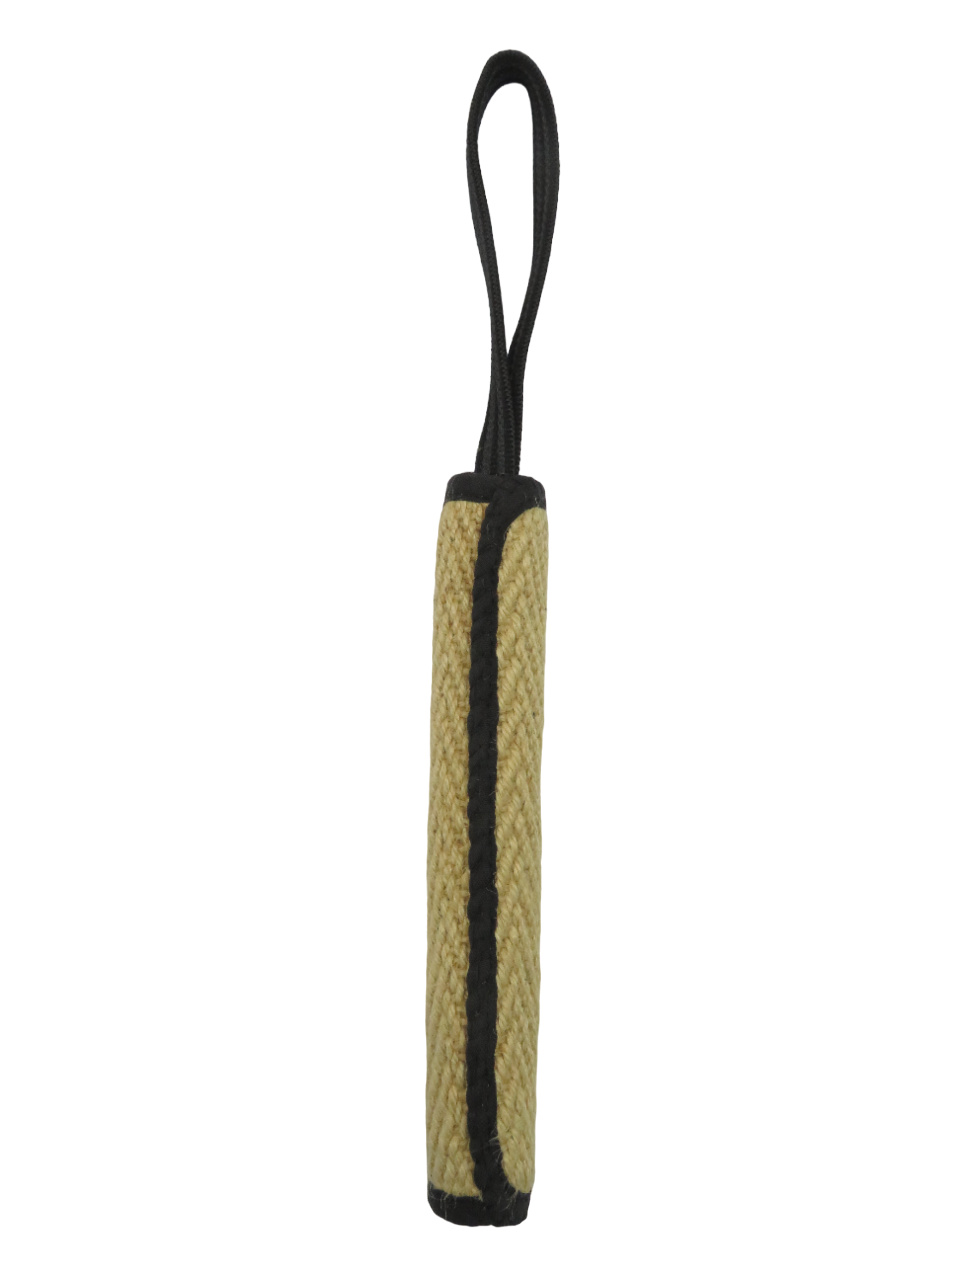 BOW WOW BOW WOW джутовая палка с 9-миллиметровой прорезиненной ручкой (натуральная) (120 г) bow wow bow wow джутовая фрисби с черной окантовкой натуральная 130 г